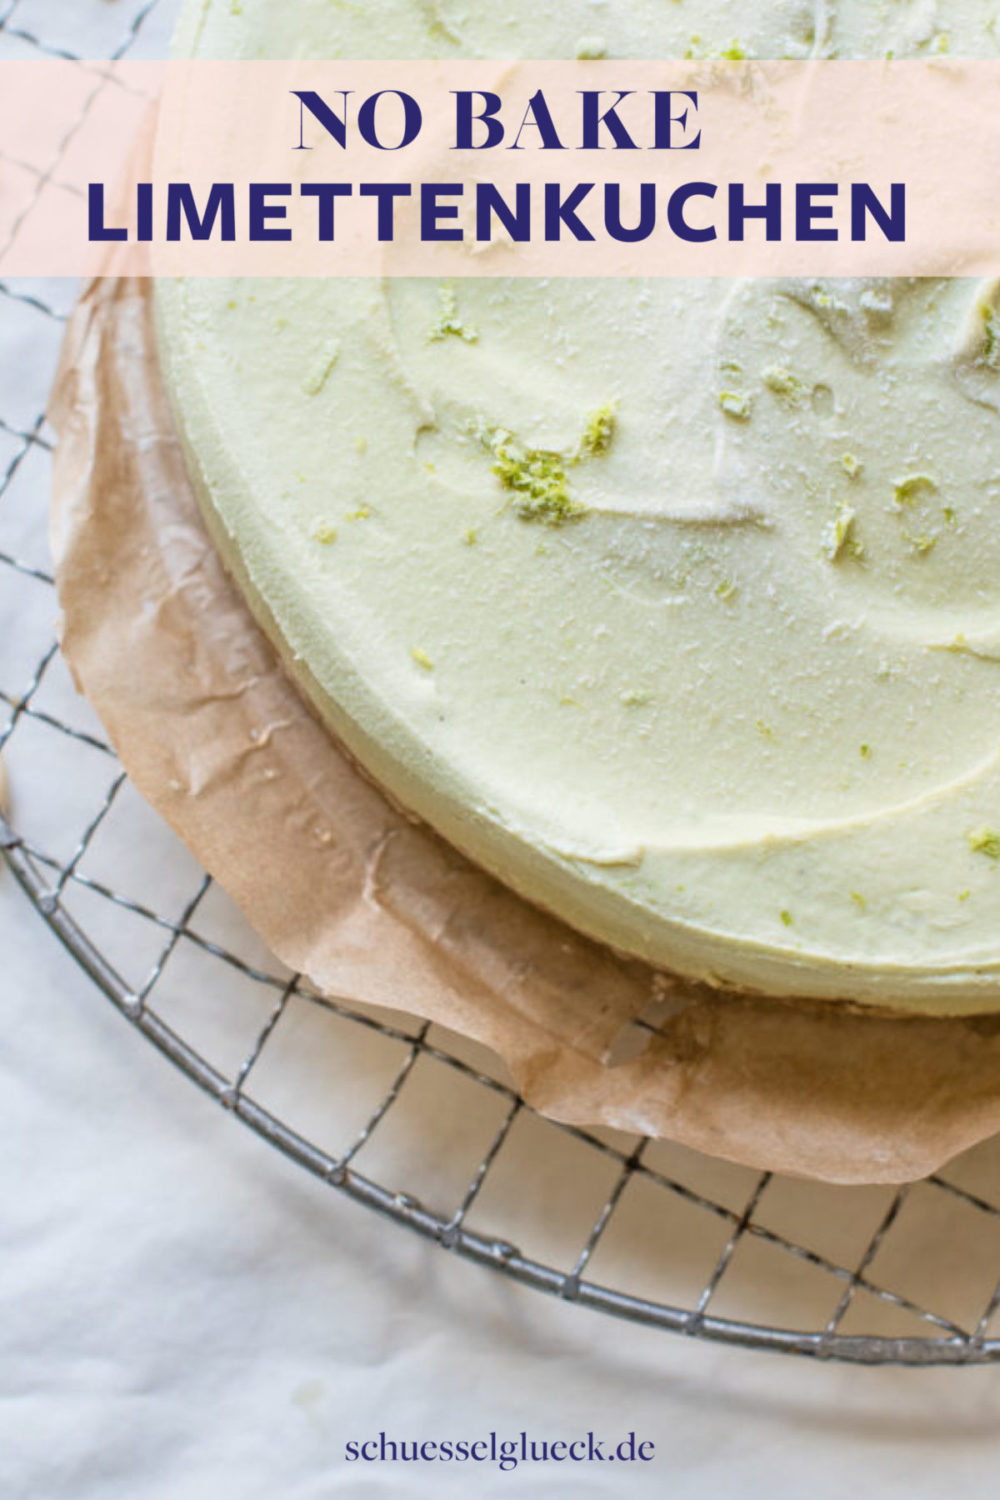 Veganer Key Lime Pie 2.0 – unser liebster Sommerkuchen direkt aus dem Kühlschrank (ohne backen)